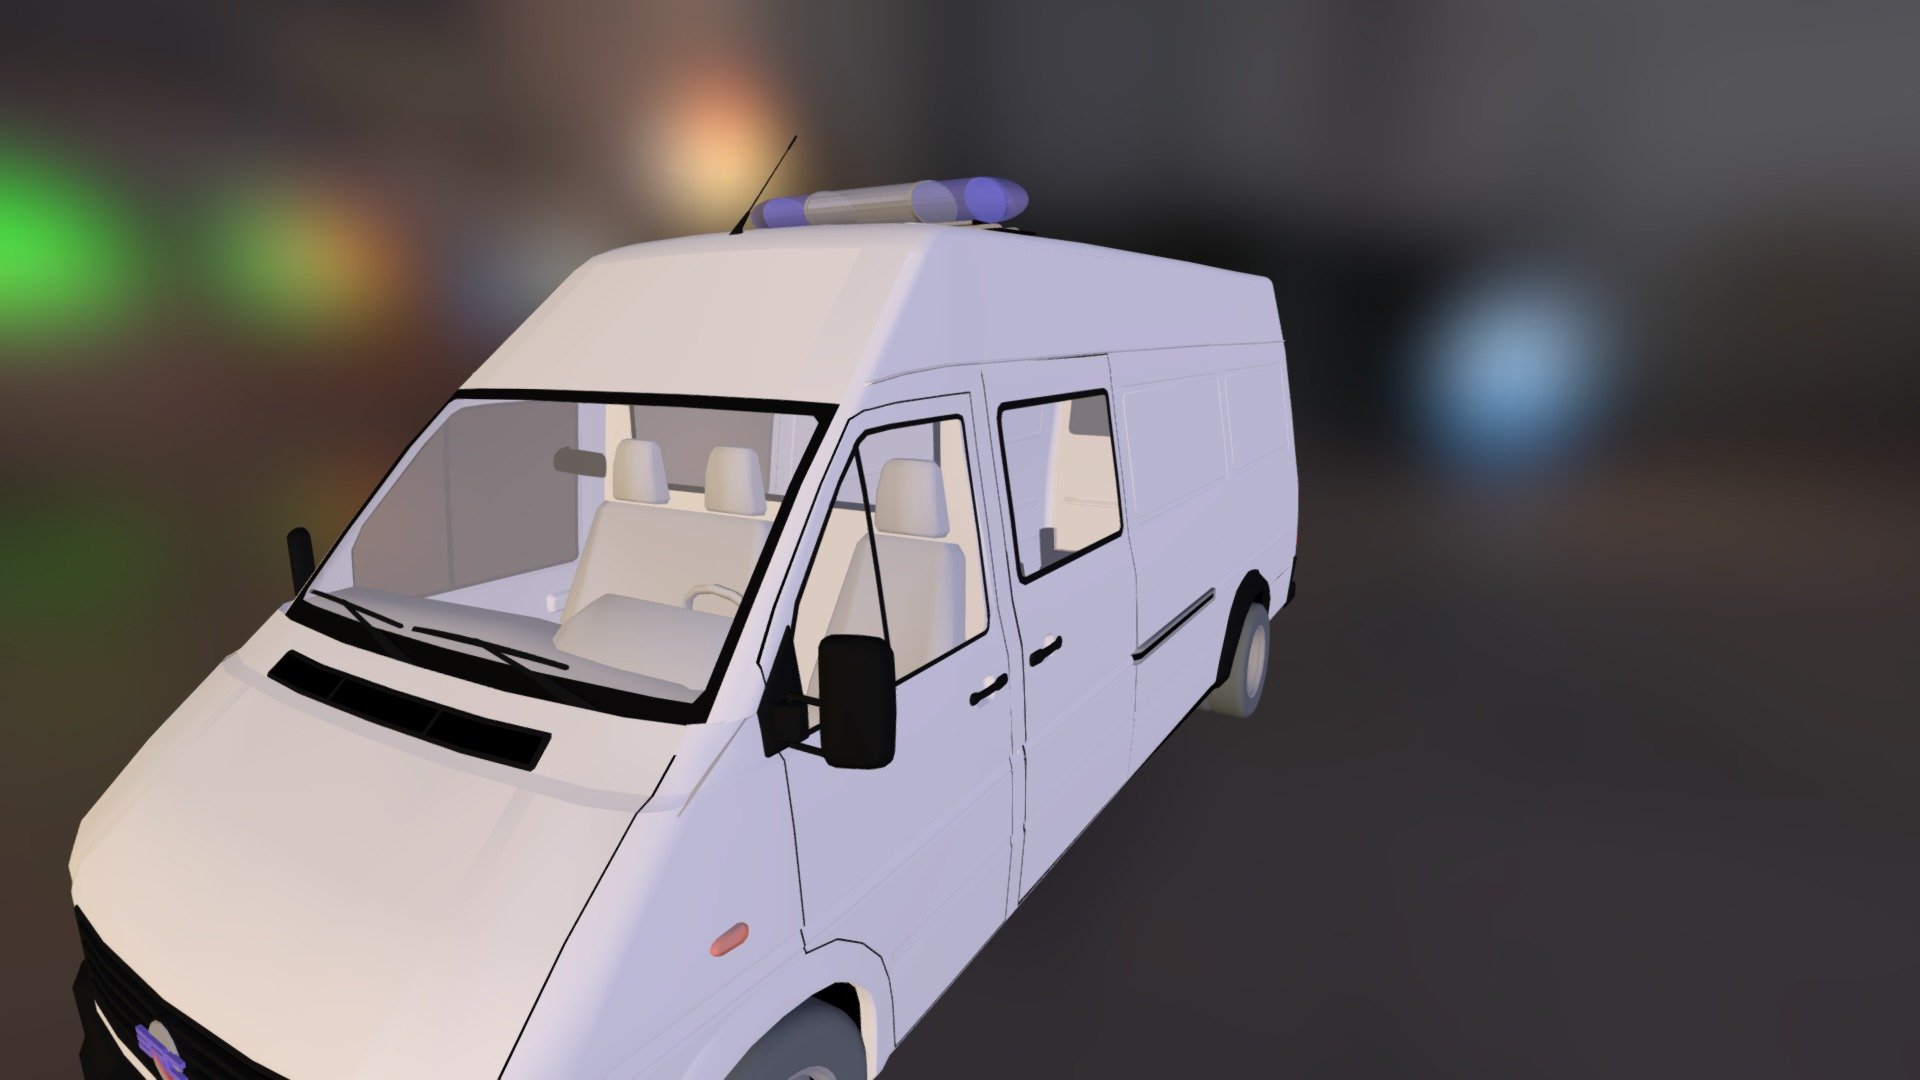 Ambulance - Ambulance - 3D model by oscarblanco 3d model